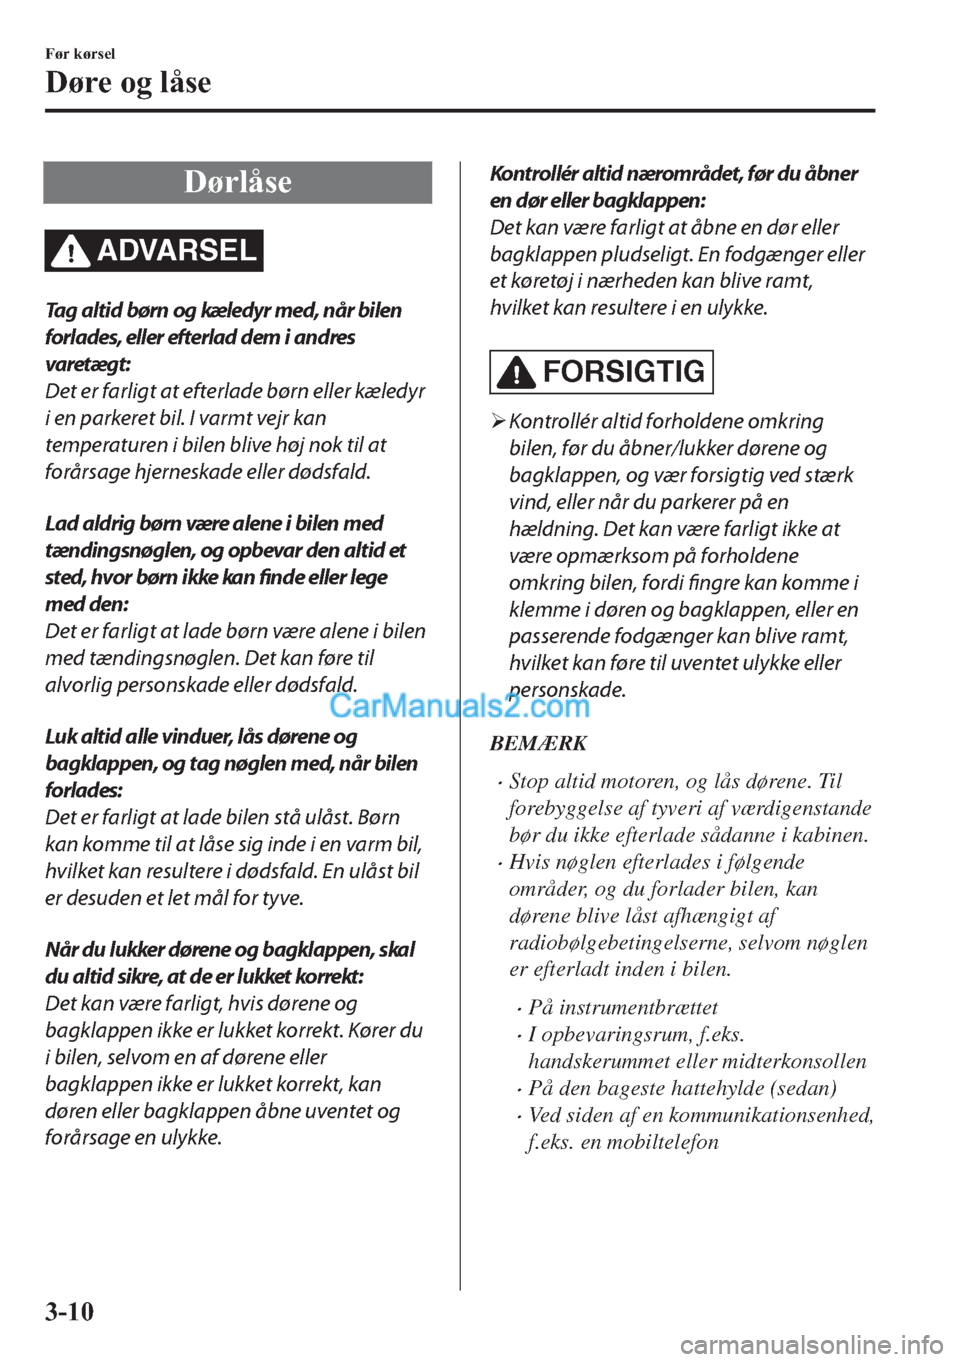 MAZDA MODEL 2 2019  Instruktionsbog (in Danish) ��¡�U�O�n�V�H
ADVARSEL
Tag altid børn og kæledyr med, når bilen
forlades, eller efterlad dem i andres
varetægt:
Det er farligt at efterlade børn eller kæledyr
i en parkeret bil. I varmt vejr k